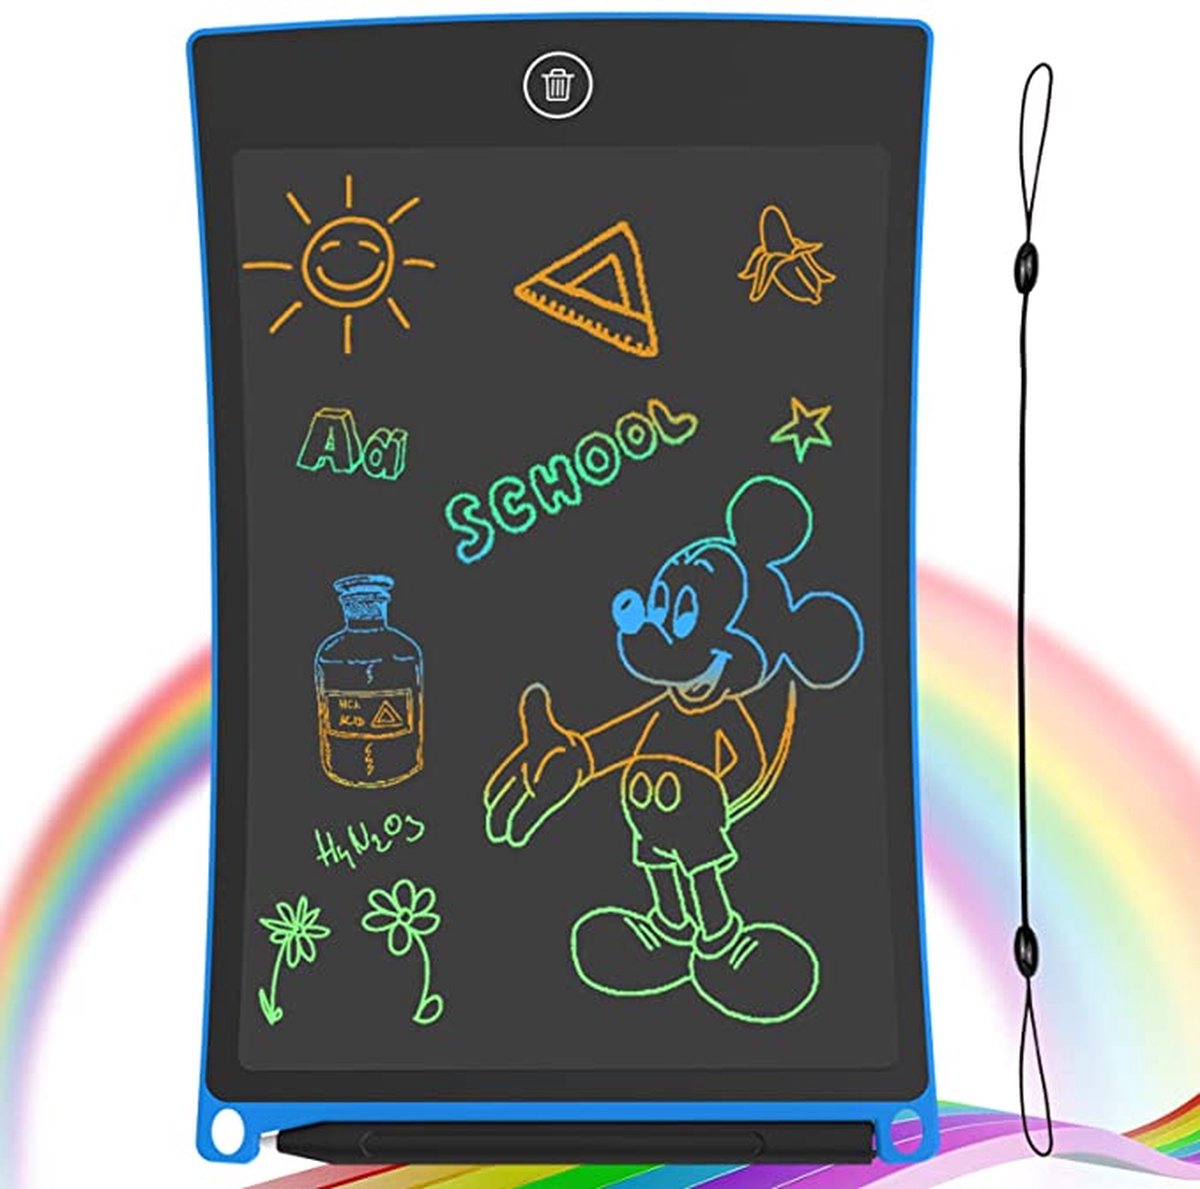 Tekentablet - Lcd-schrijfbord met kleurrijk scherm, 10 inch wisbaar tekenblok Doodle board, grafische tablet tekenbord met schakelslot, cadeau voor kinderen en volwassenen (10 inch, blauw)